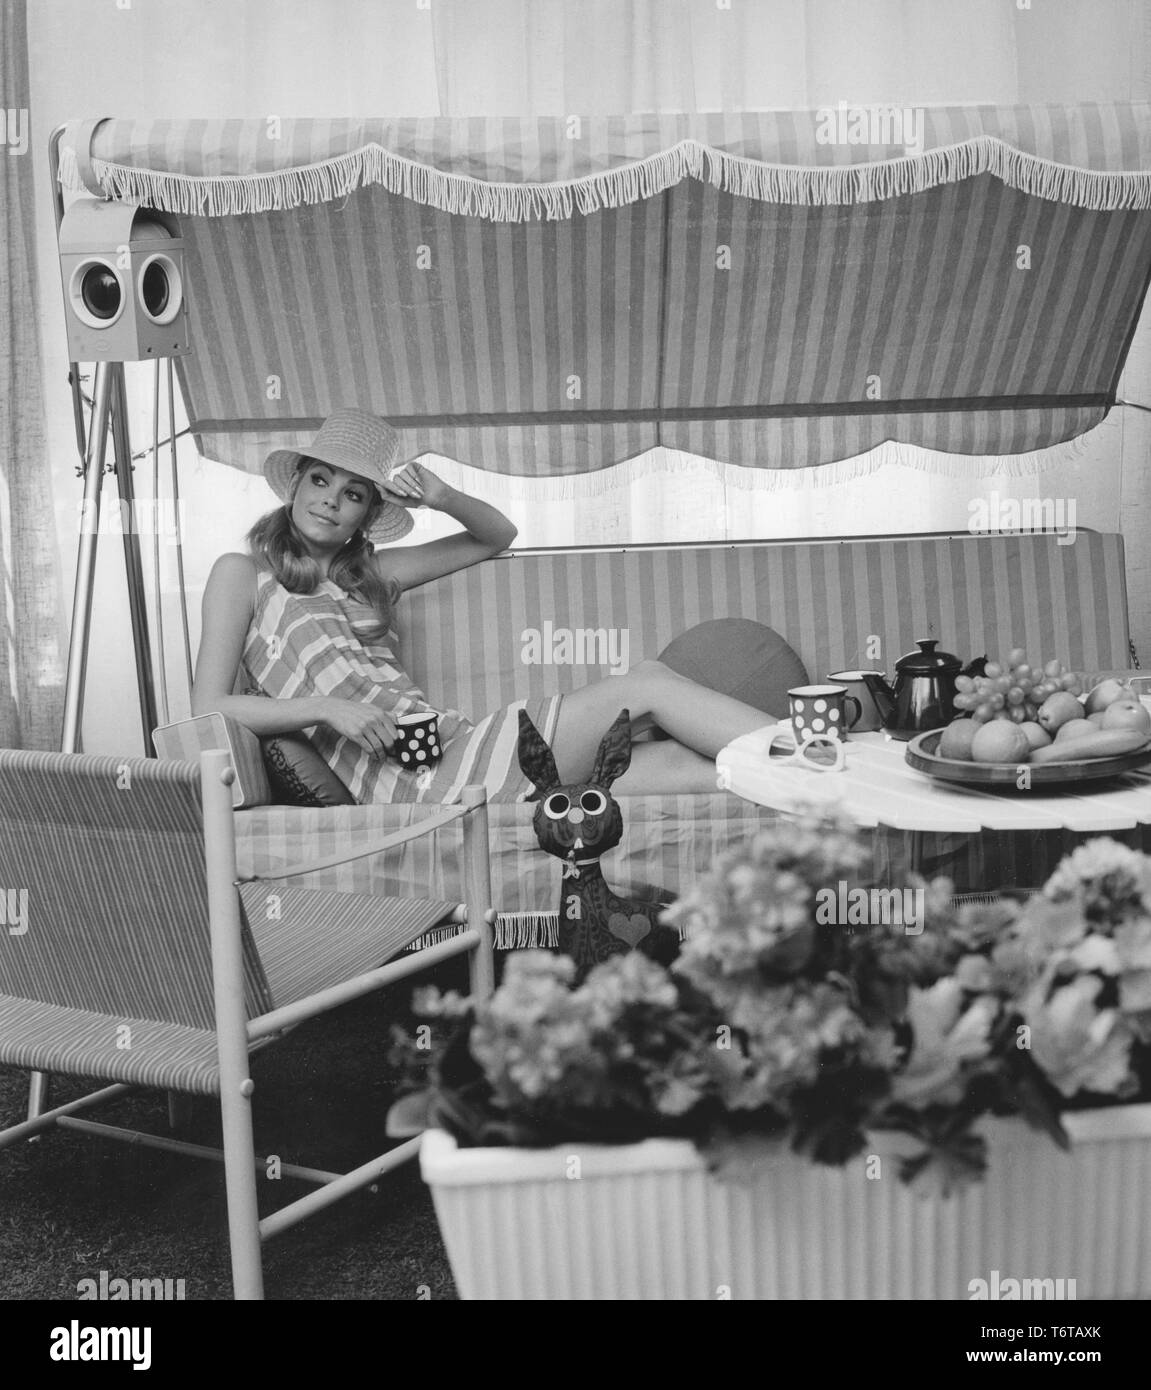 Estate degli anni sessanta. Una giovane donna è seduta comforably in una amaca di bere caffè. Il design dei mobili e il suo vestito rappresenta il sessanta decade molto bene. La Svezia degli anni sessanta Foto Stock